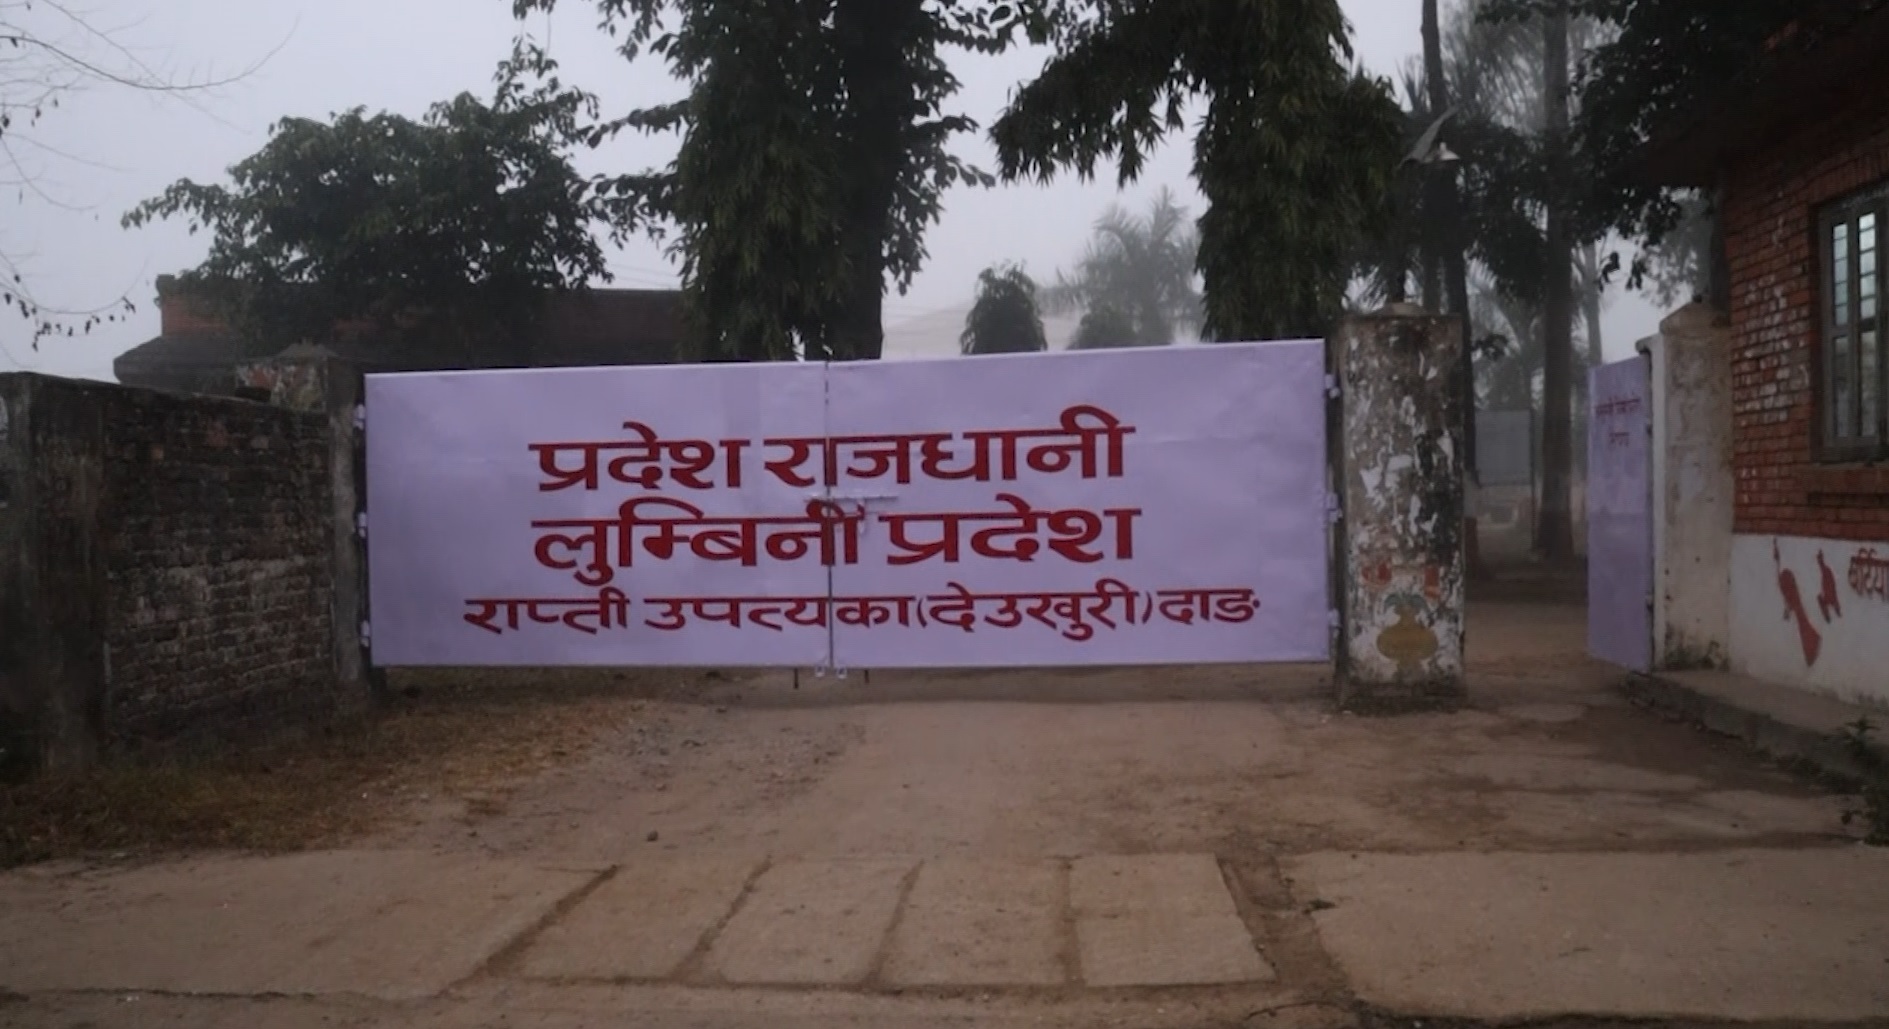 लुम्बिनी प्रदेशको स्थायी राजधानीमा मुख्यमन्त्री कार्यालय